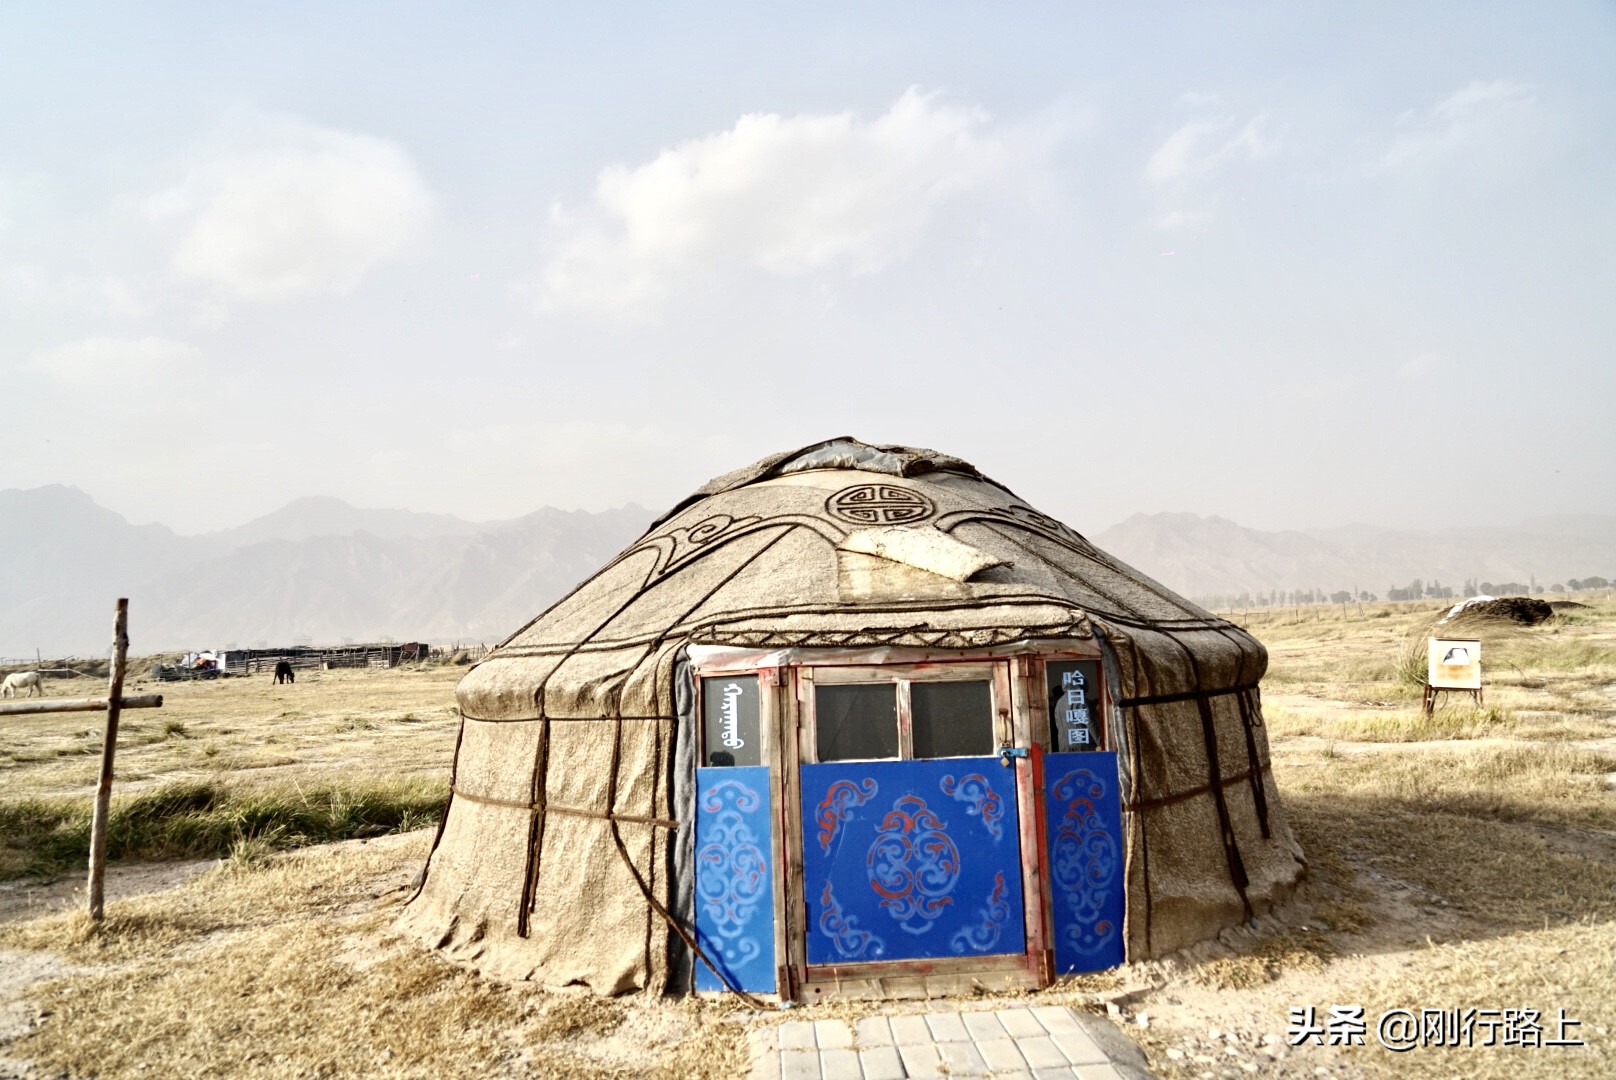 来内蒙古旅游一定要做的几件事，或许这才是真正的内蒙